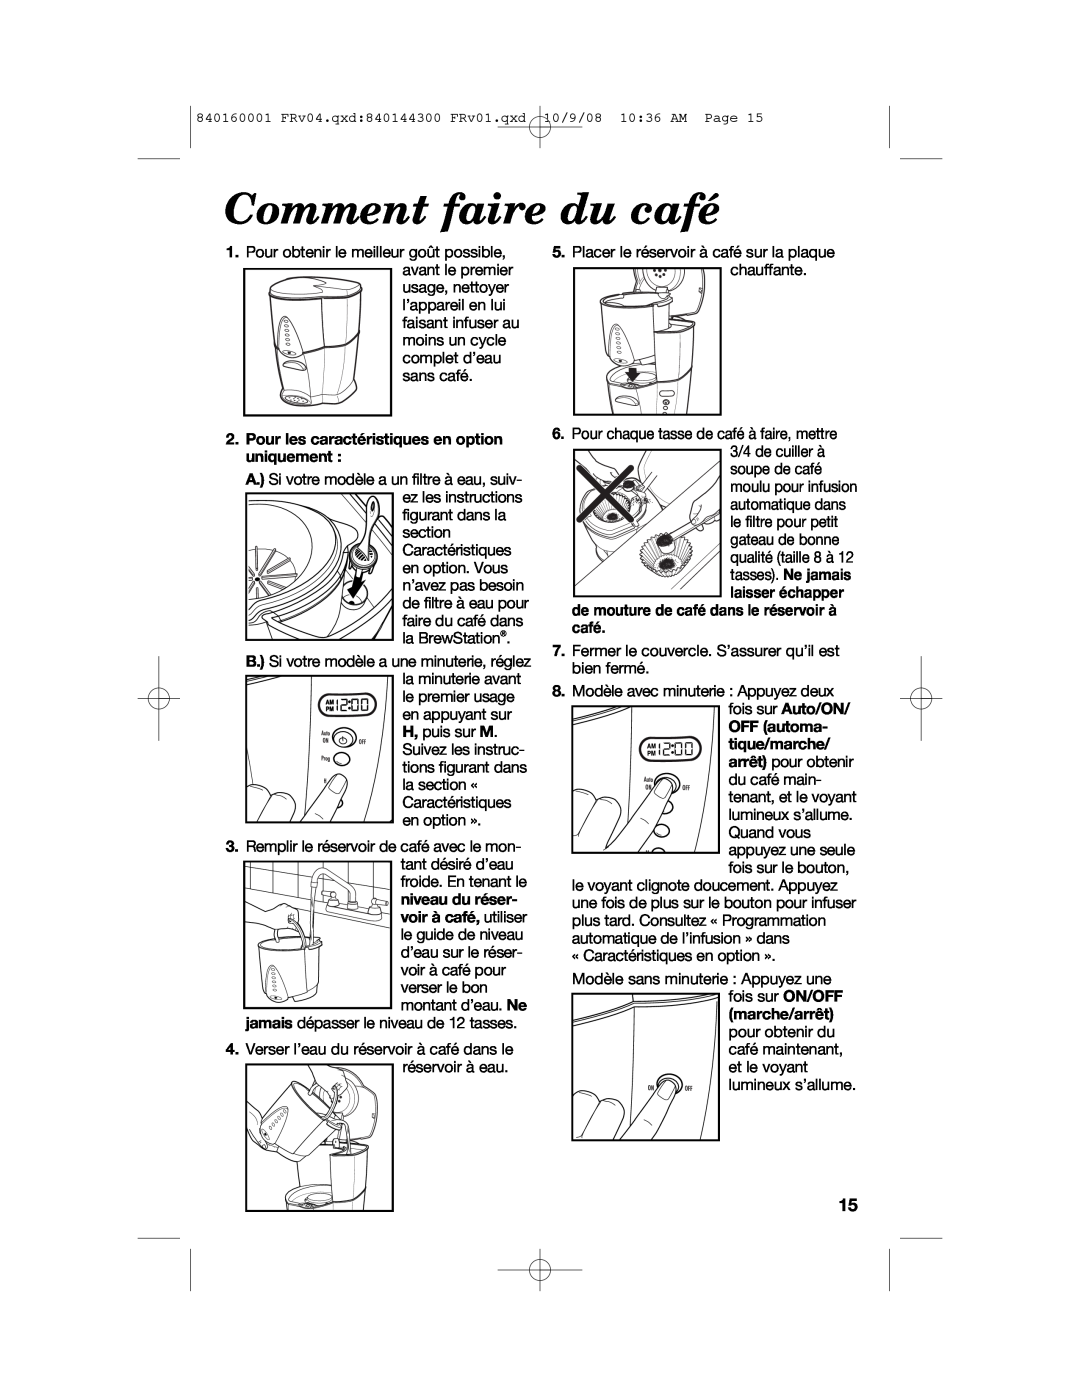 Hamilton Beach 47214 manual Comment faire du café, Pour les caractéristiques en option uniquement, OFF automa- tique/marche 